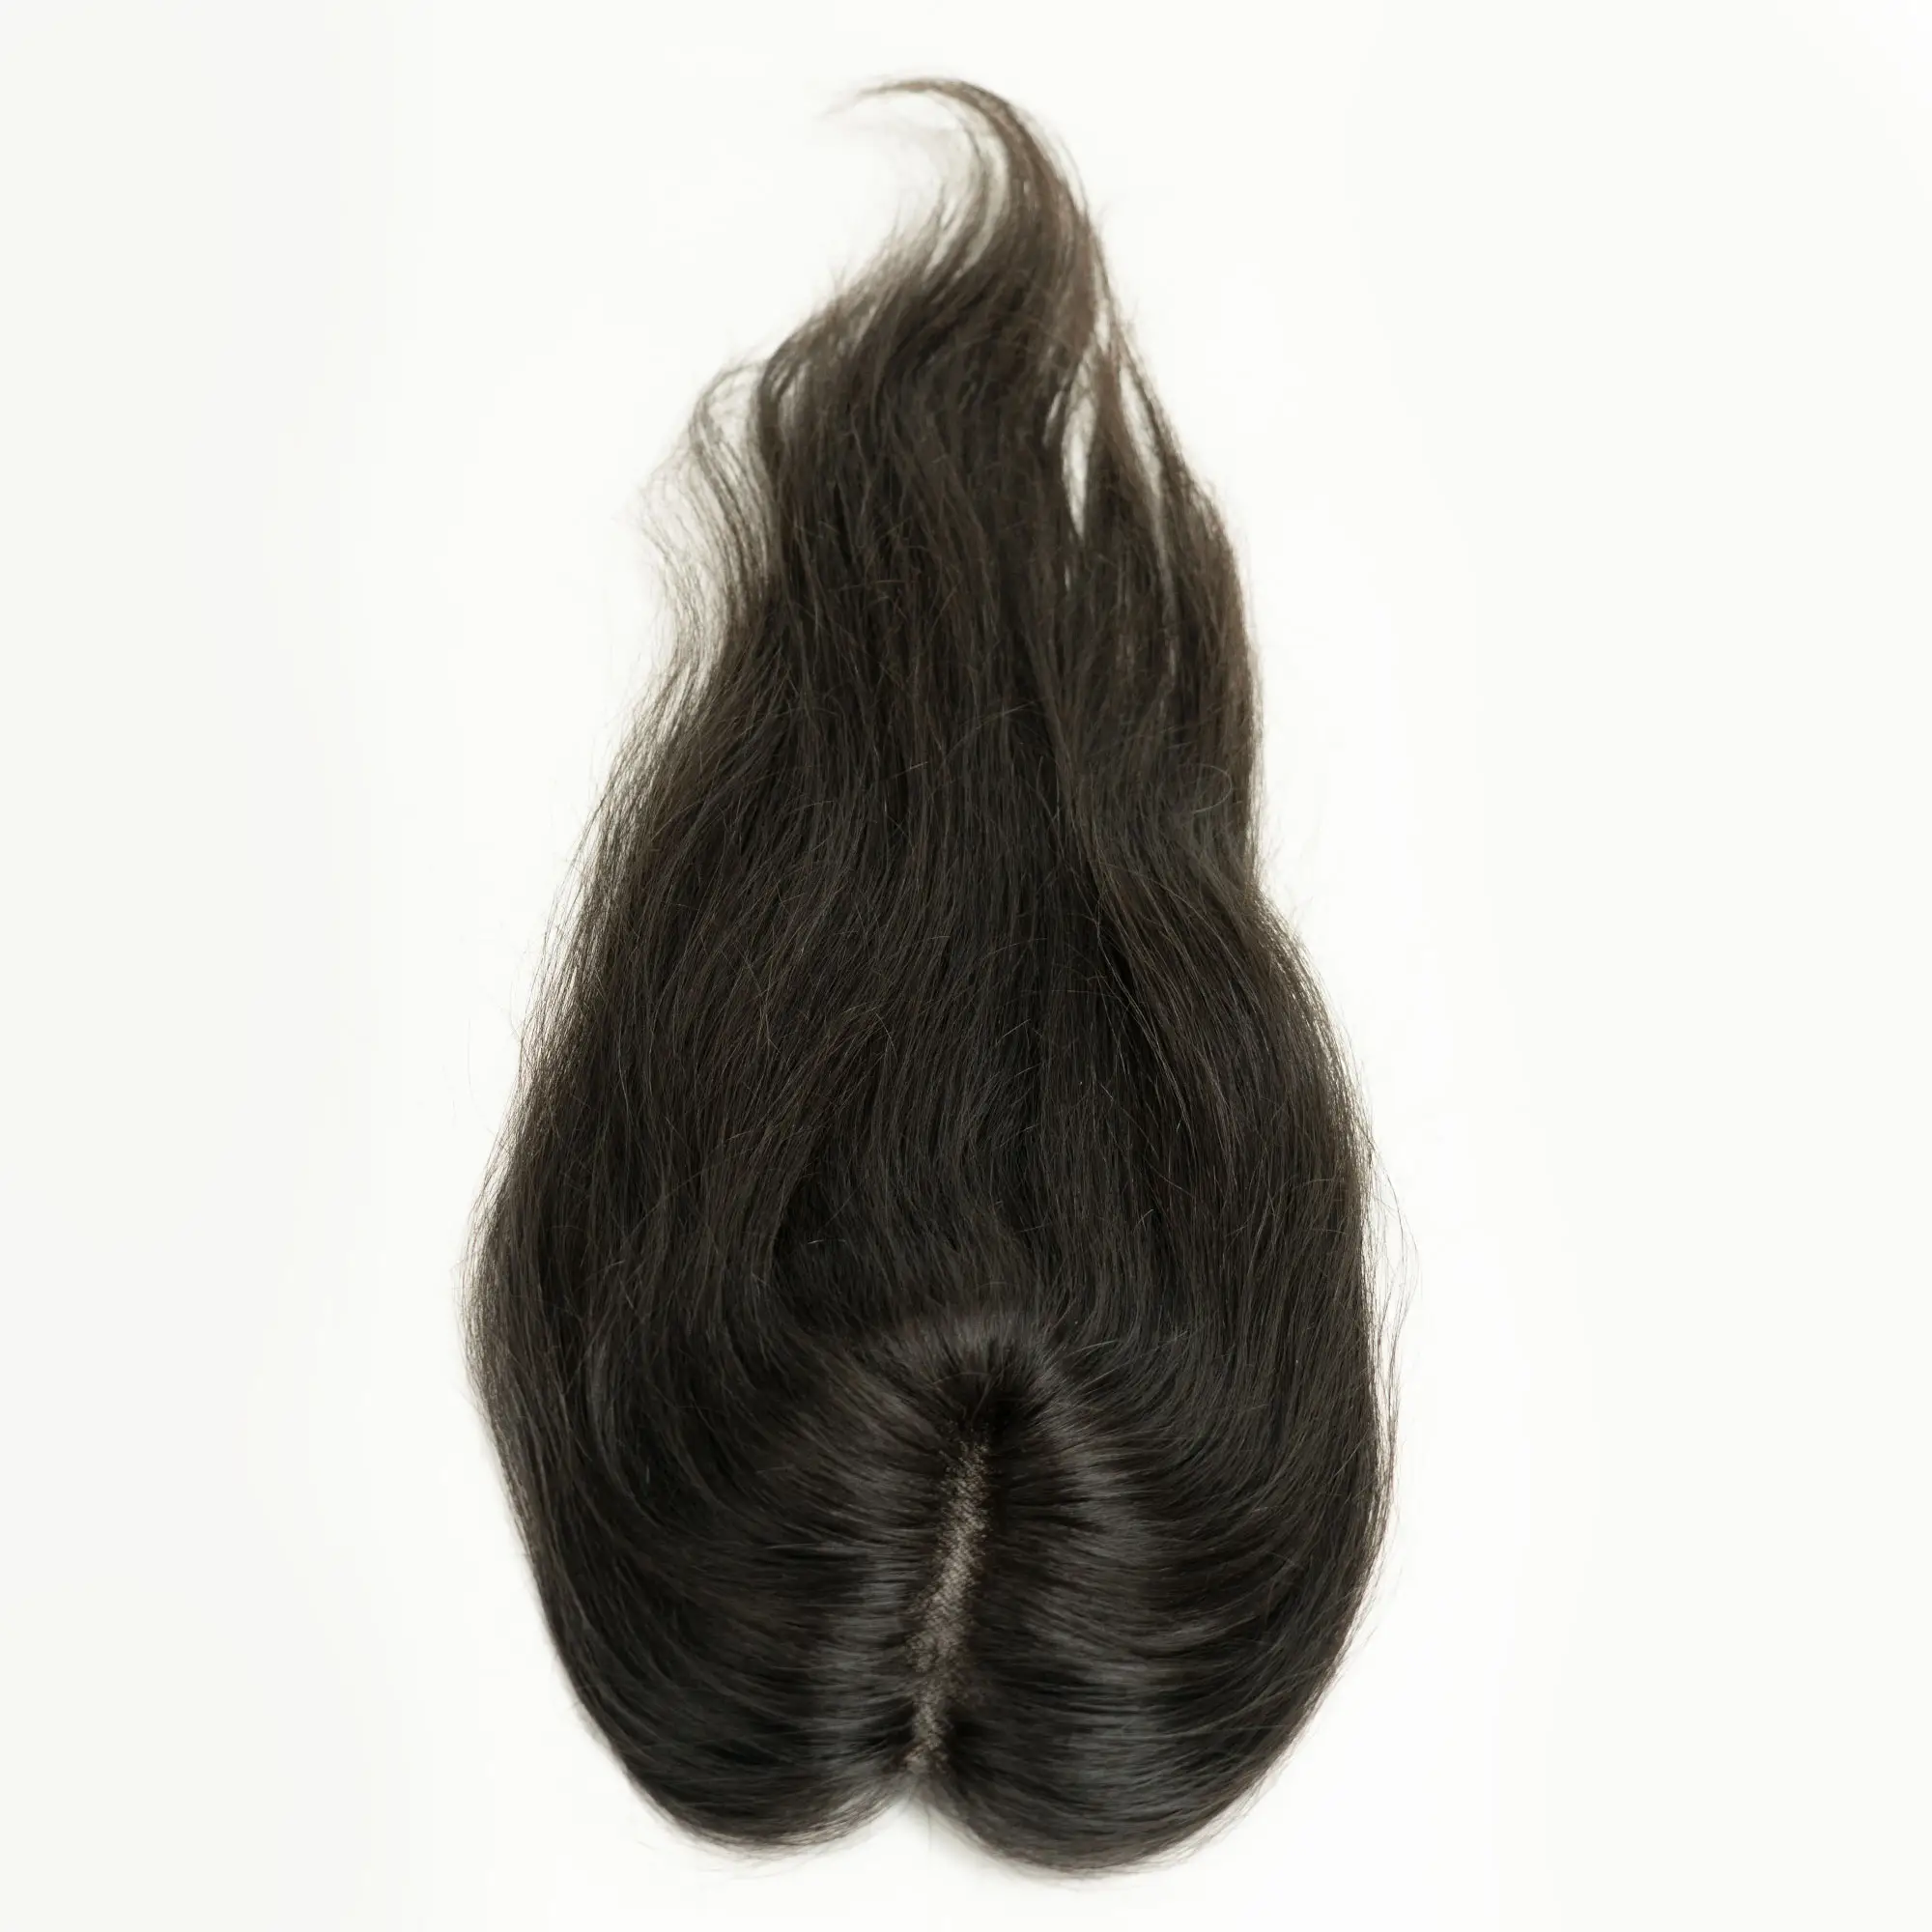 TOPPERS féminins personnalisés de la meilleure qualité 100% avec cuticules alignées, PATCH de cheveux humains réels pour l'éclaircissement et les taches chauves